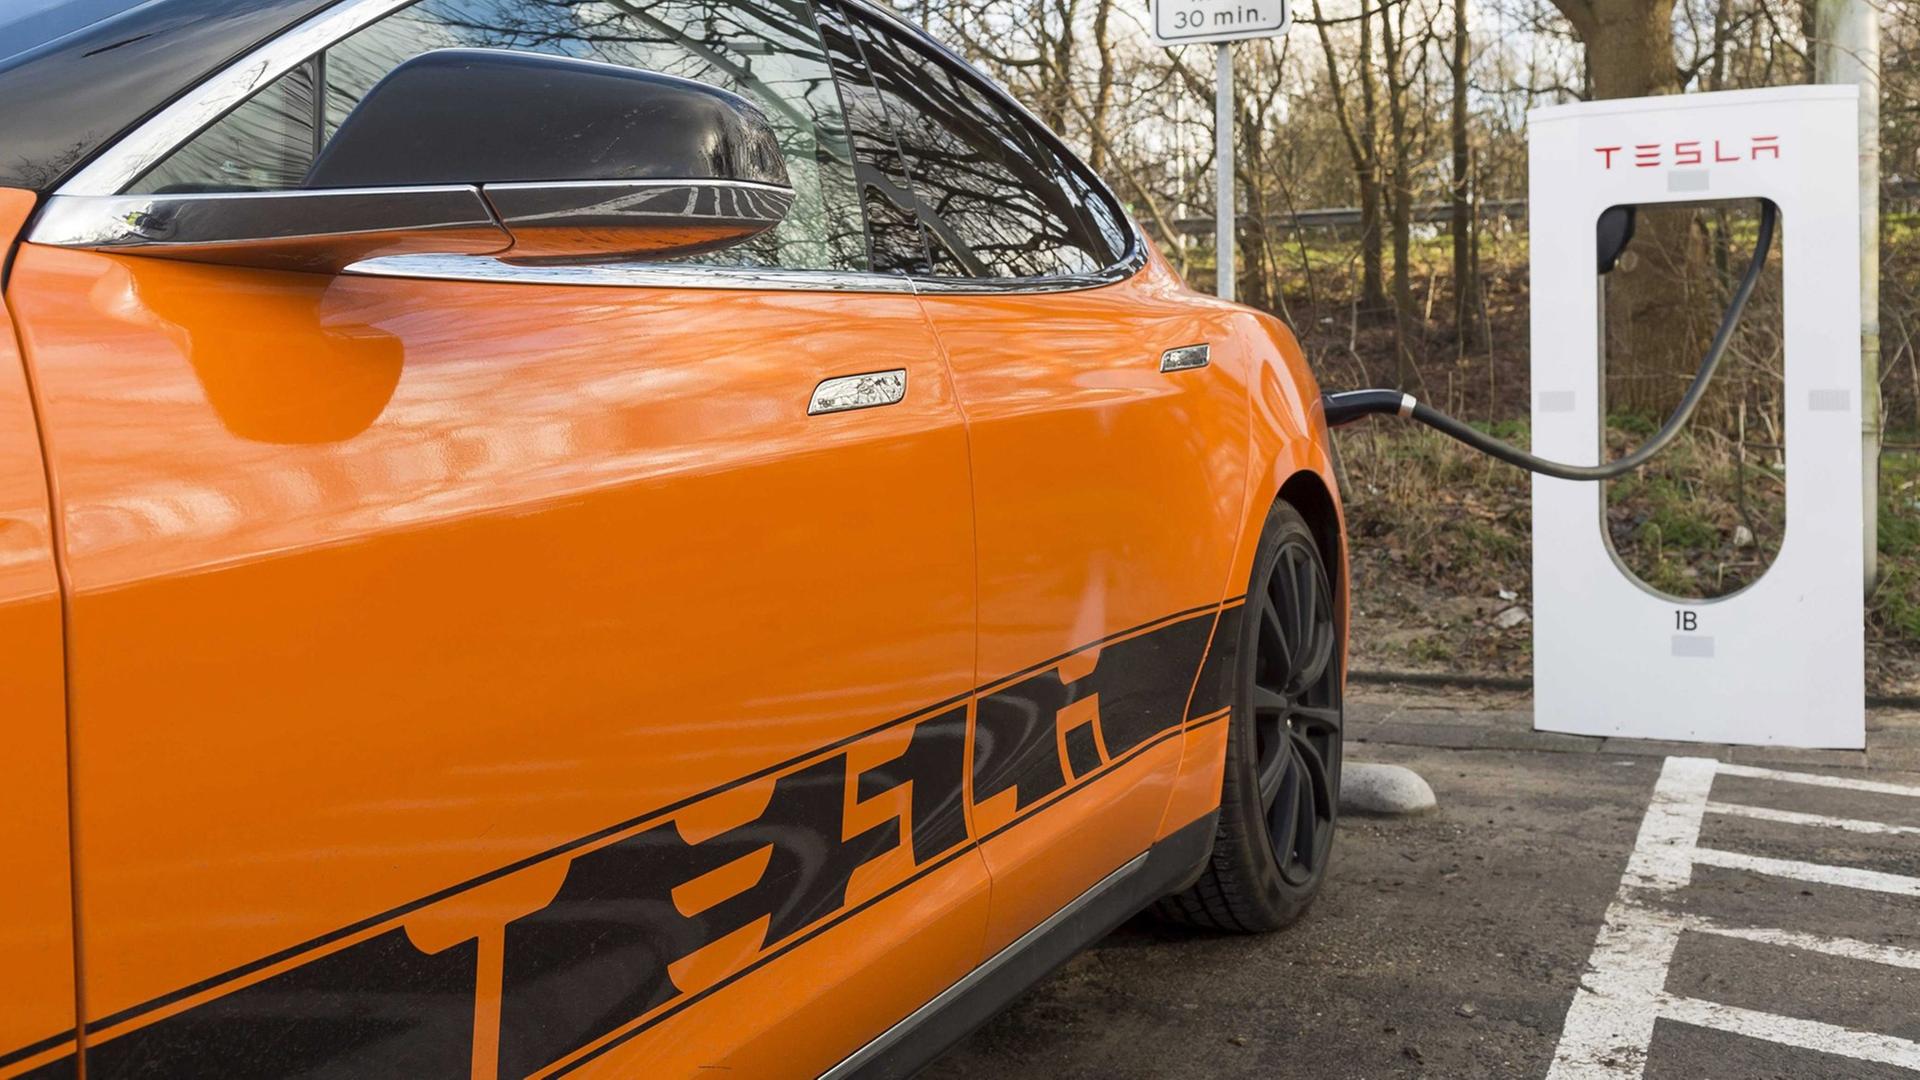 Ein orangefarbenes Elektro-Auto mit der Aufschrift "Tesla" ist an eine Lade-Station angeschlossen.